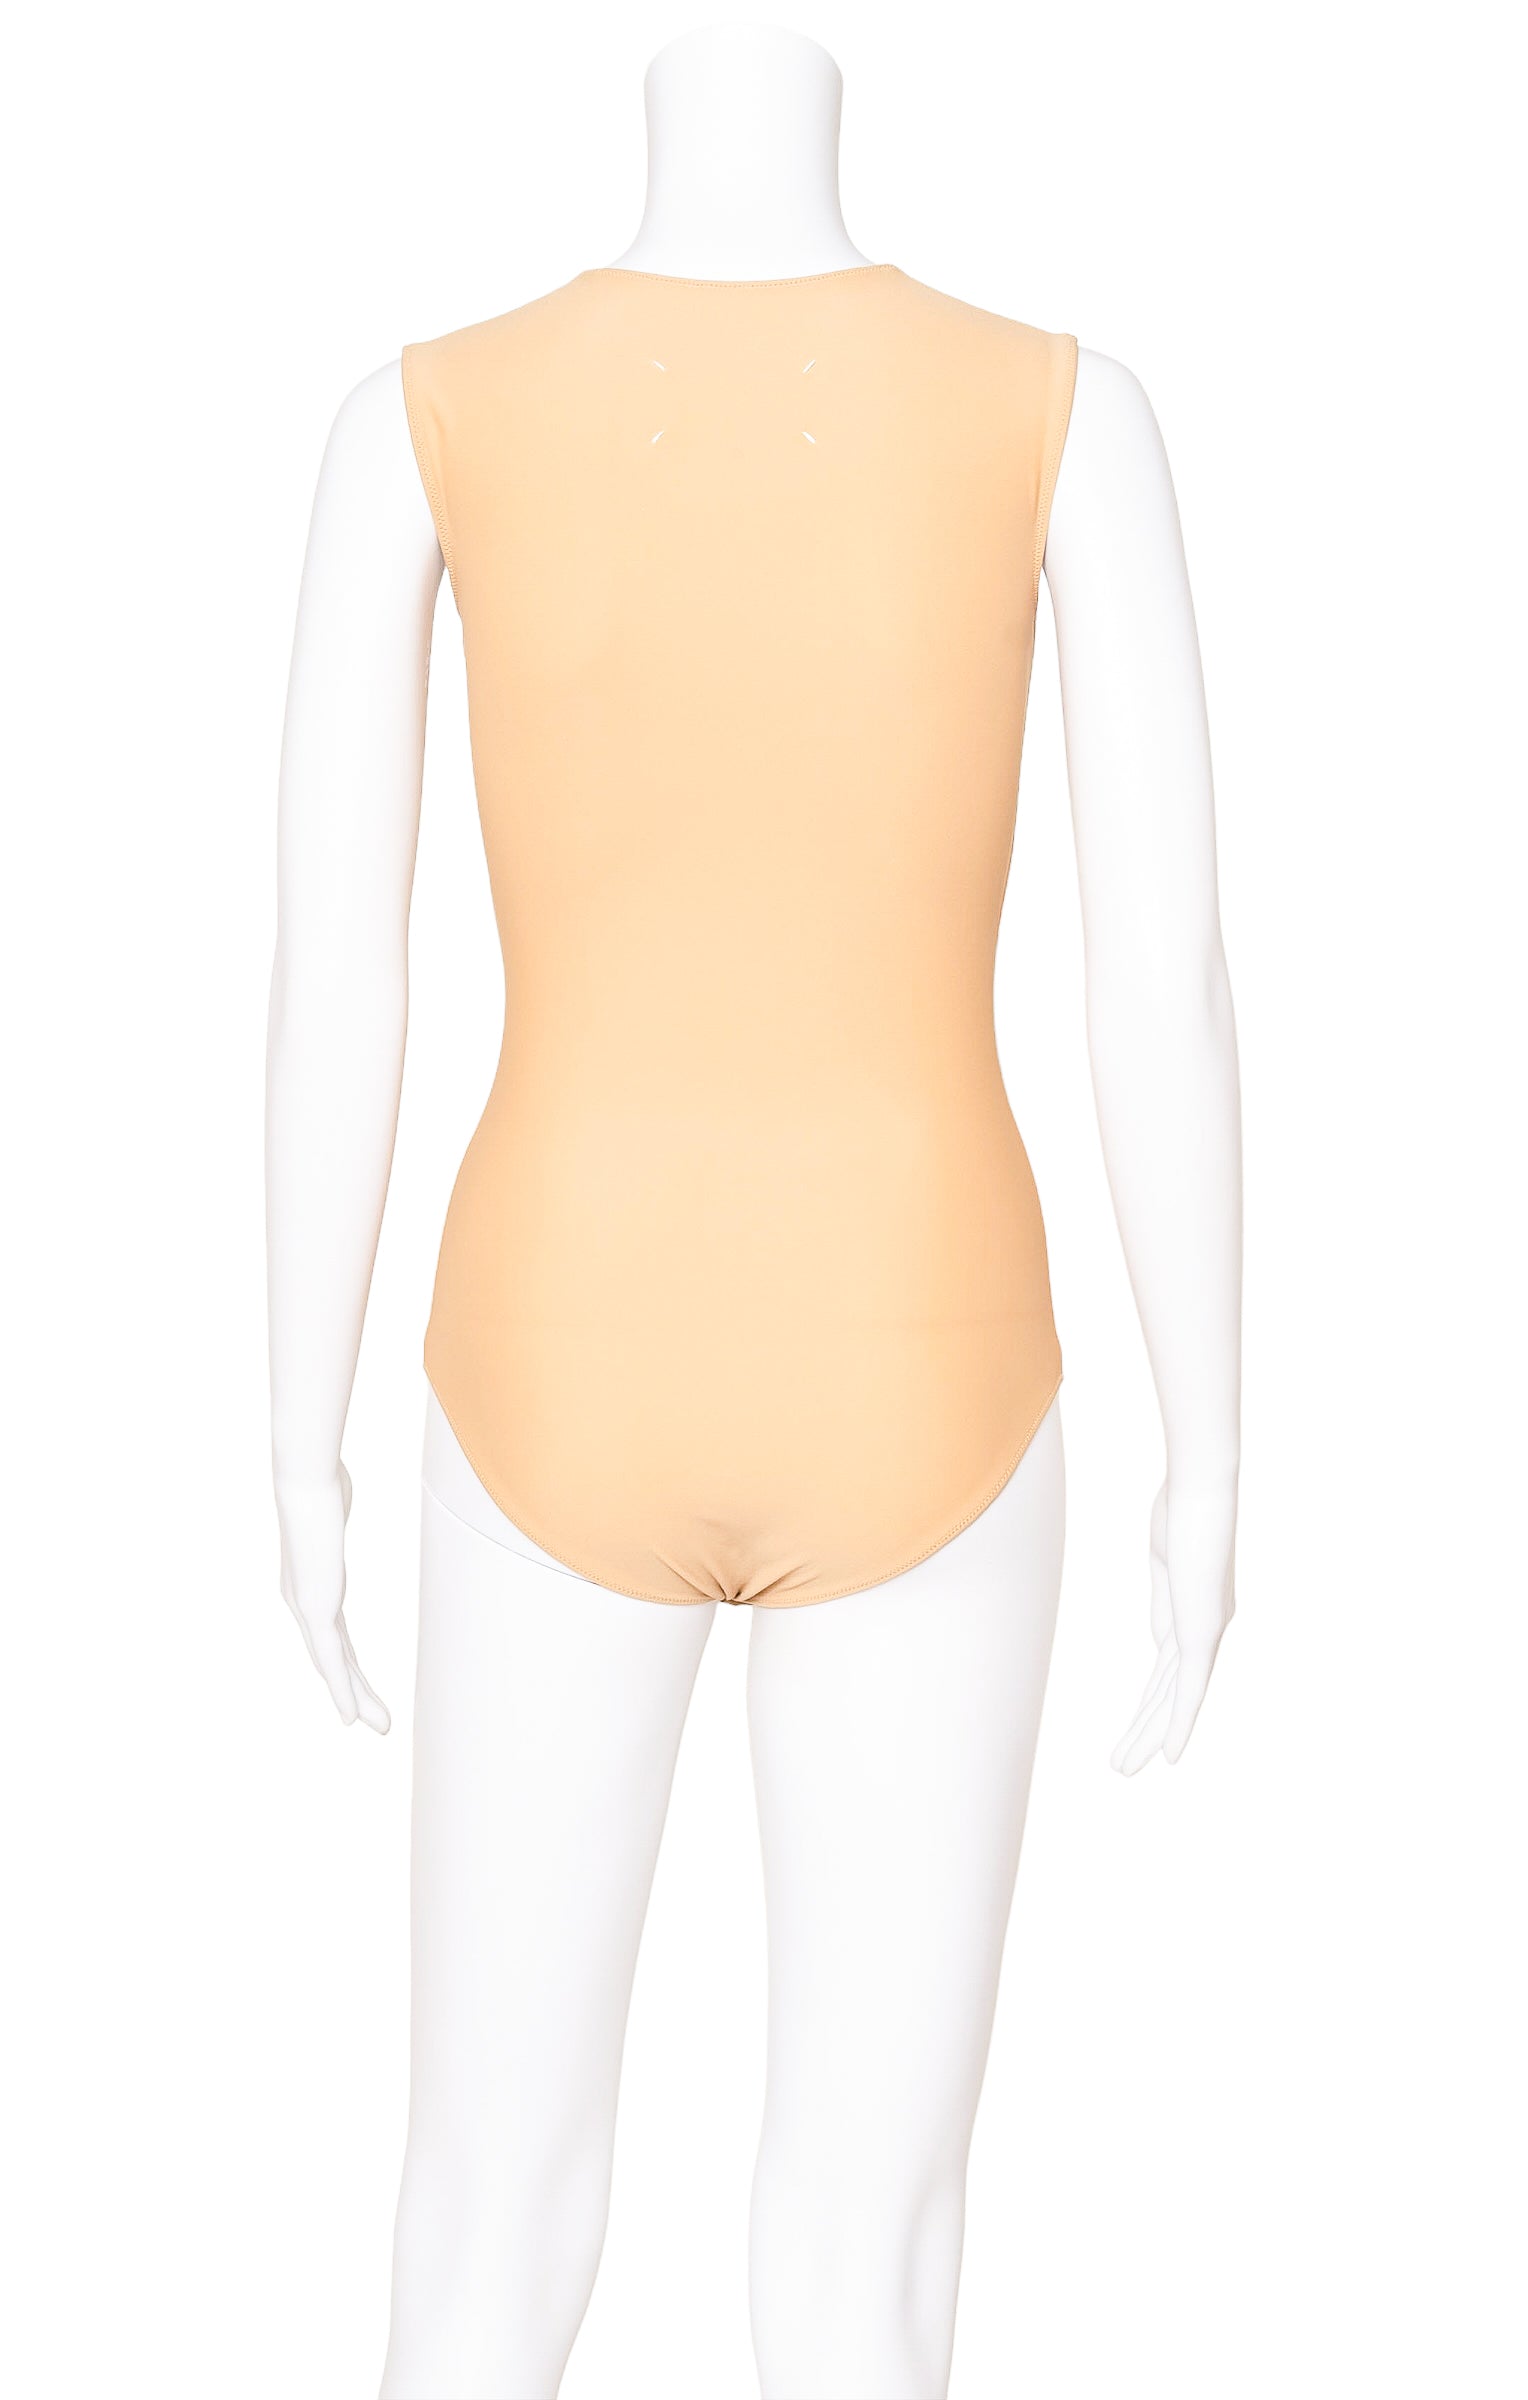 MAISON MARGIELA Bodysuit Size: IT 38 / Comparable to US 0-2